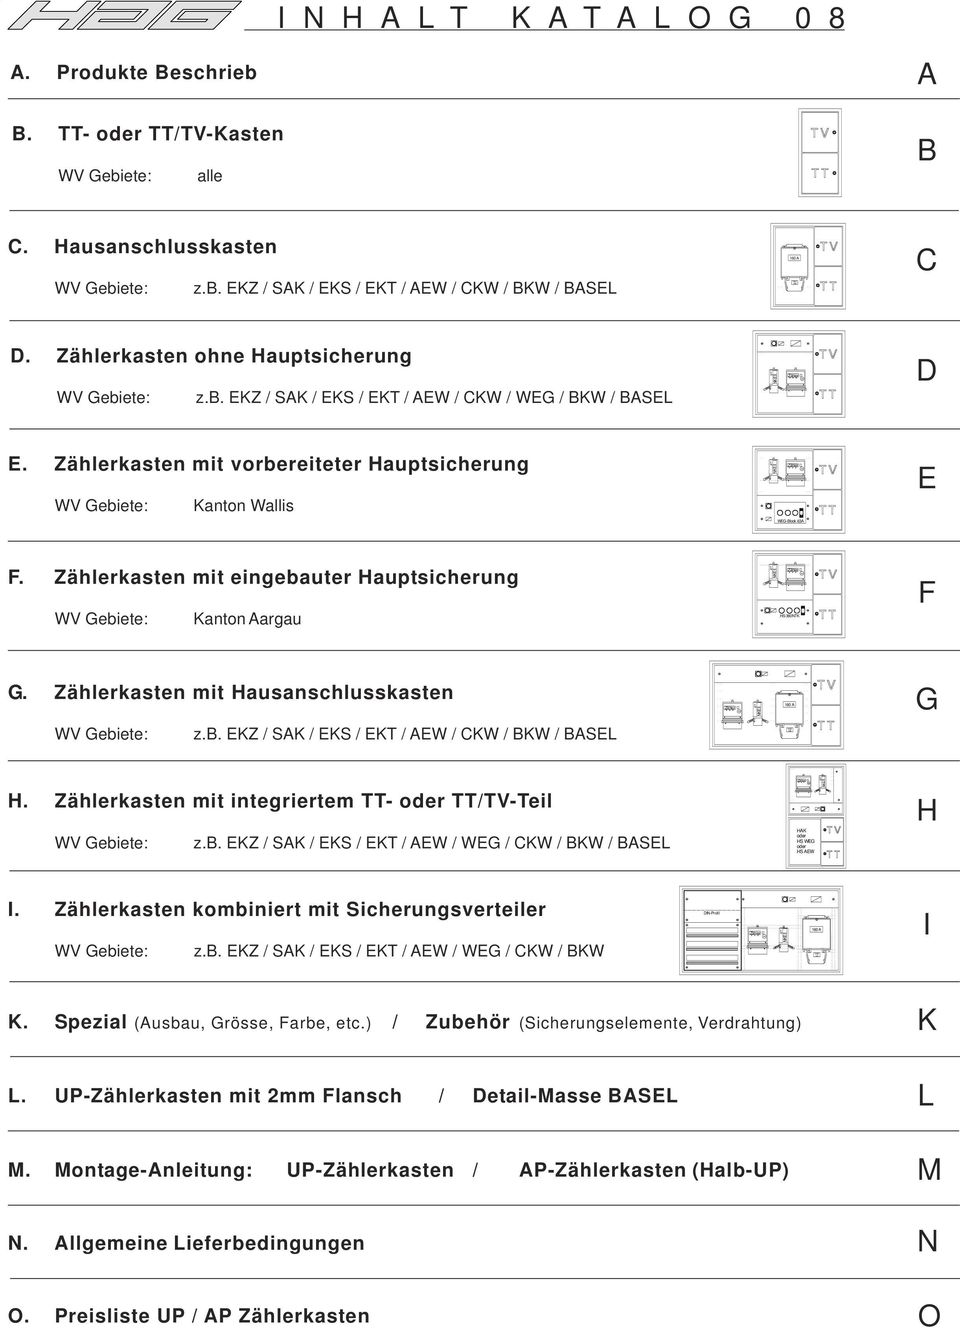 kasten eingebauter Hauptsicherung WV Gebiete: Kanton argau HS 3NTK F G. kasten Hausanschlusskasten 1 G WV Gebiete: z.. EKZ / SK / EKS / EKT / EW / CKW / KW / SEL H.